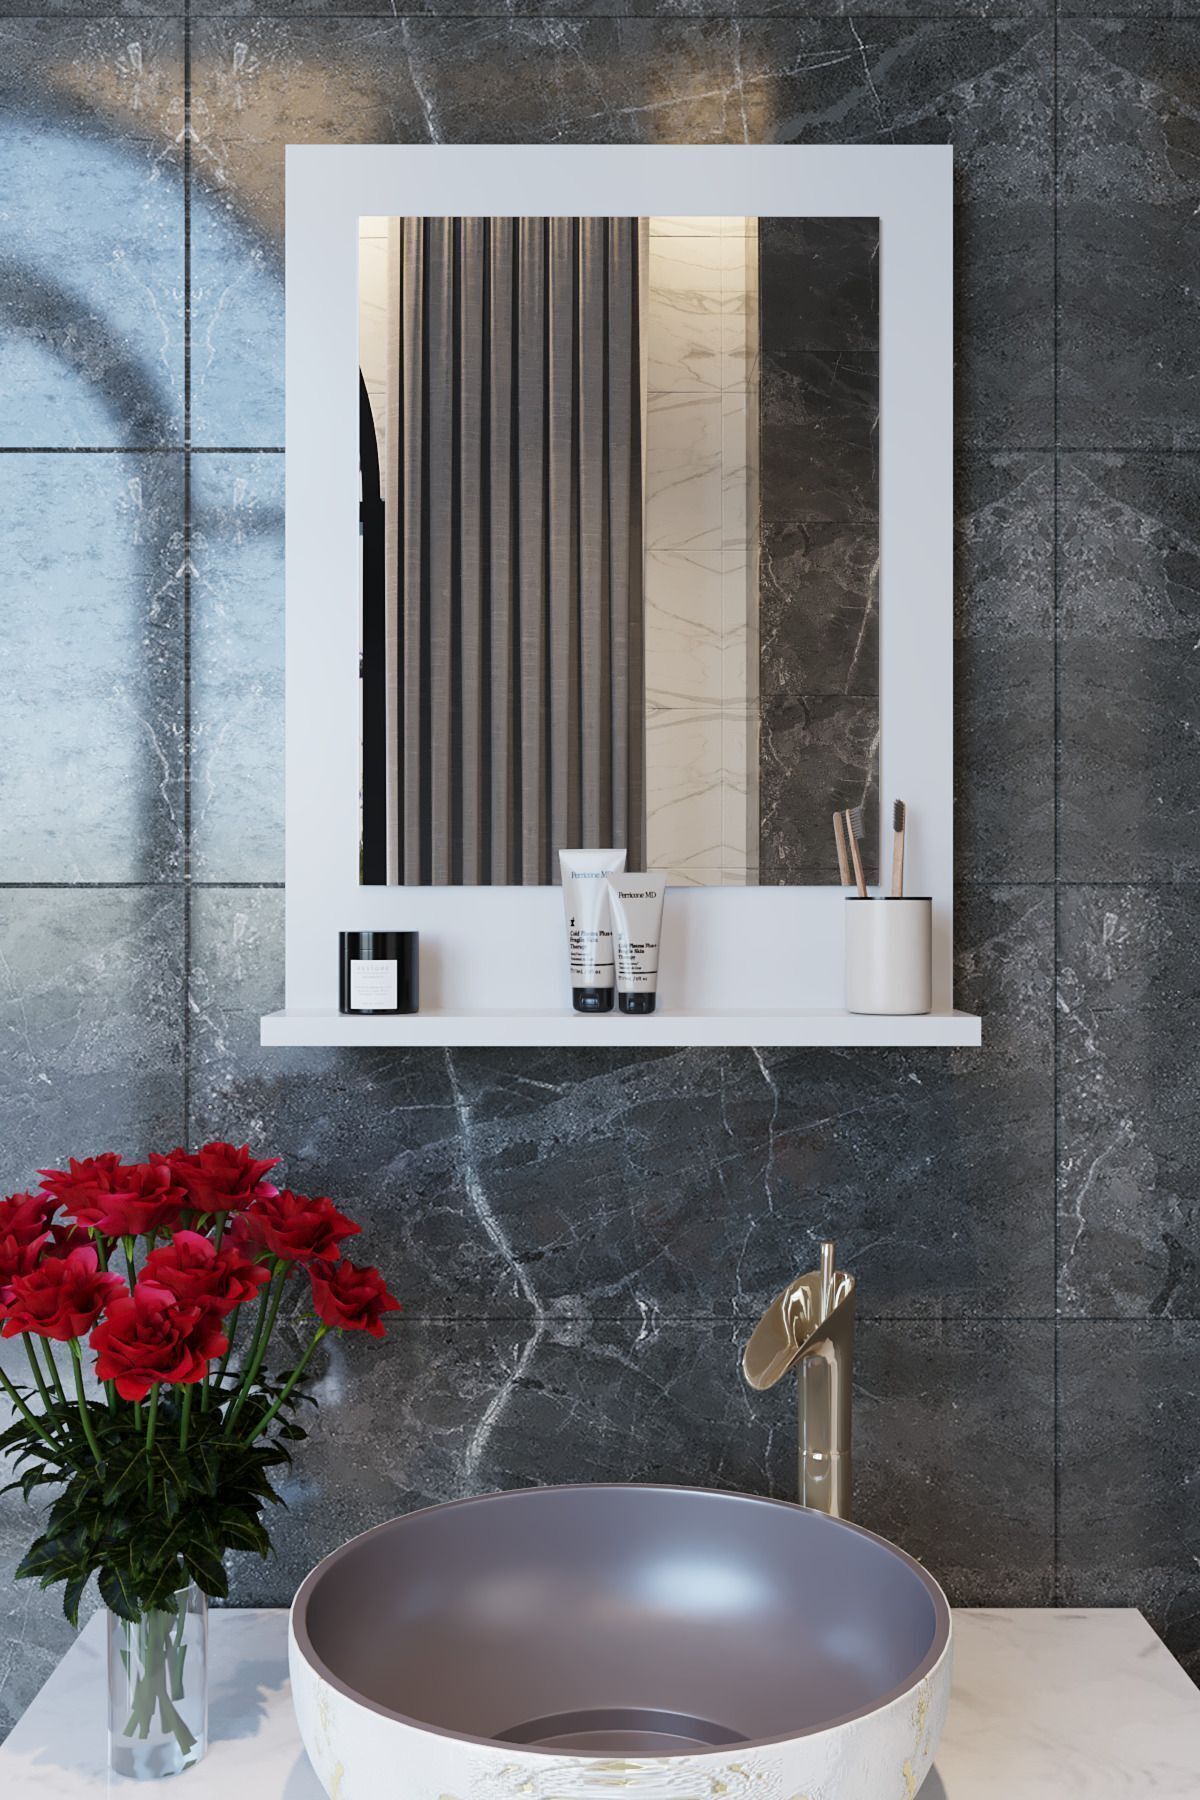 makbulce Safir Banyo Aynası, Dresuar,60x45 Beyaz Raflı Banyo Aynası